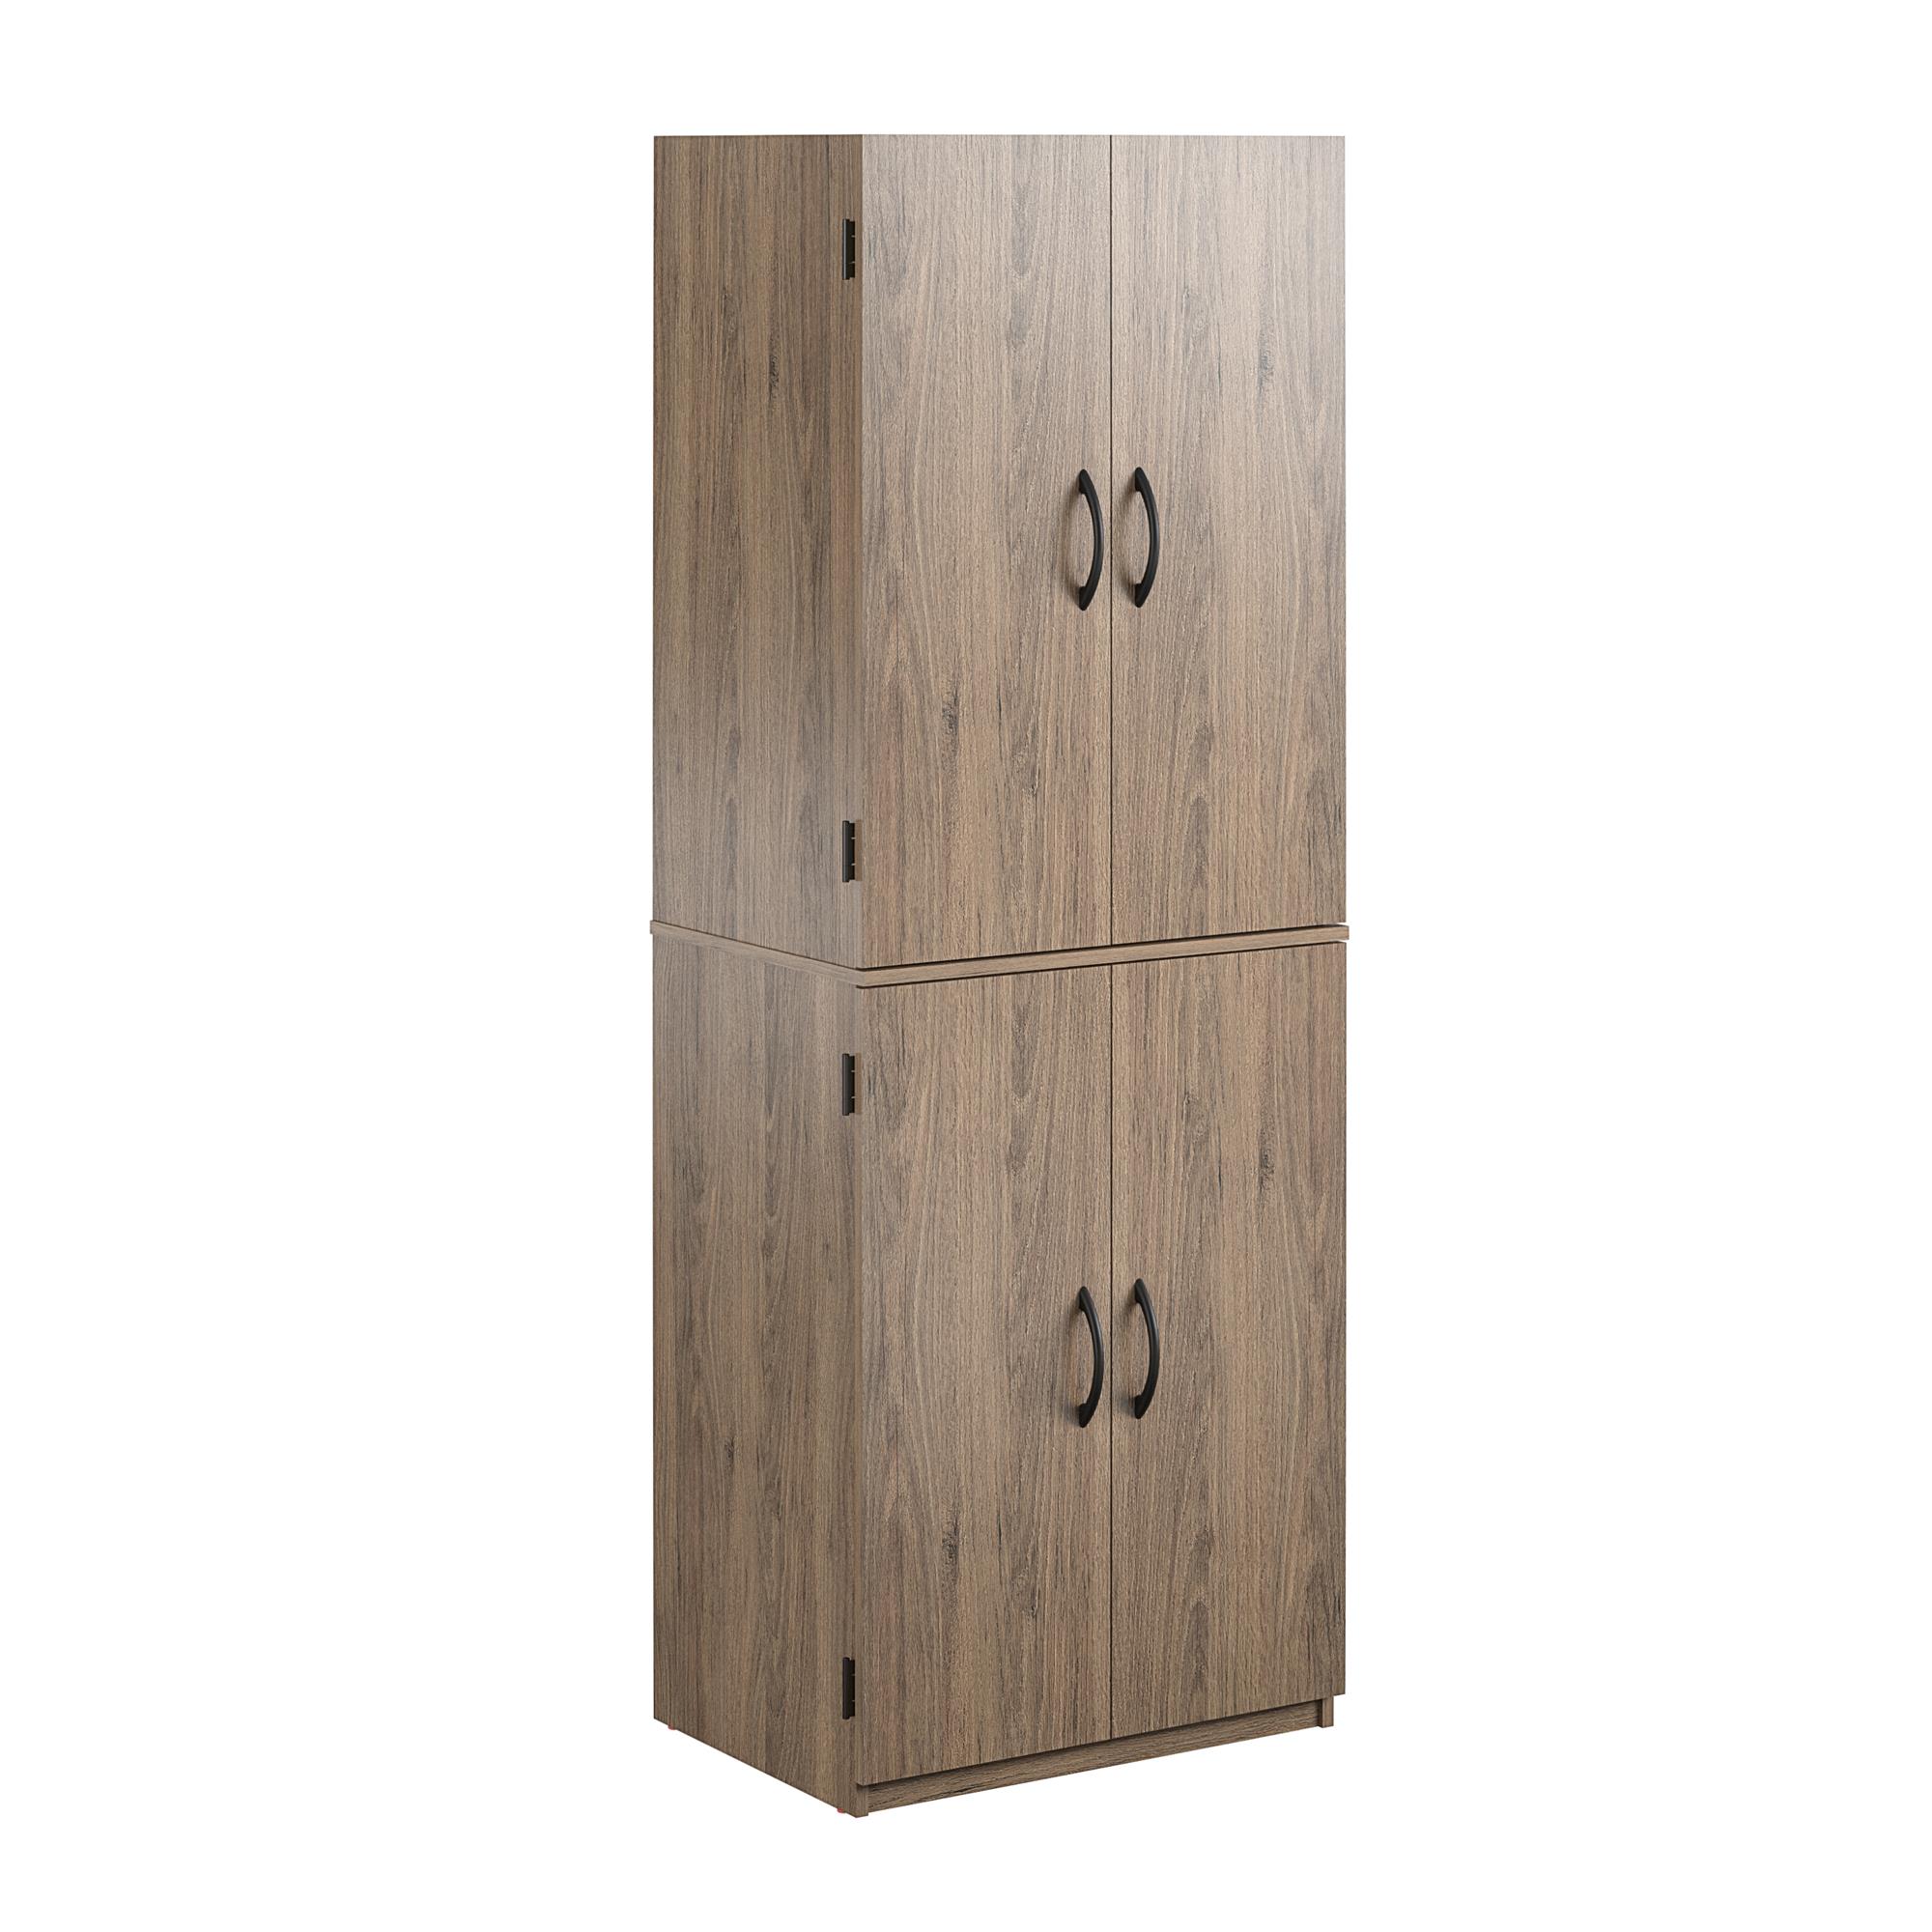 Mainstays 4-Door 5' Storage Cabinet, Rustic Oak - image 4 of 15